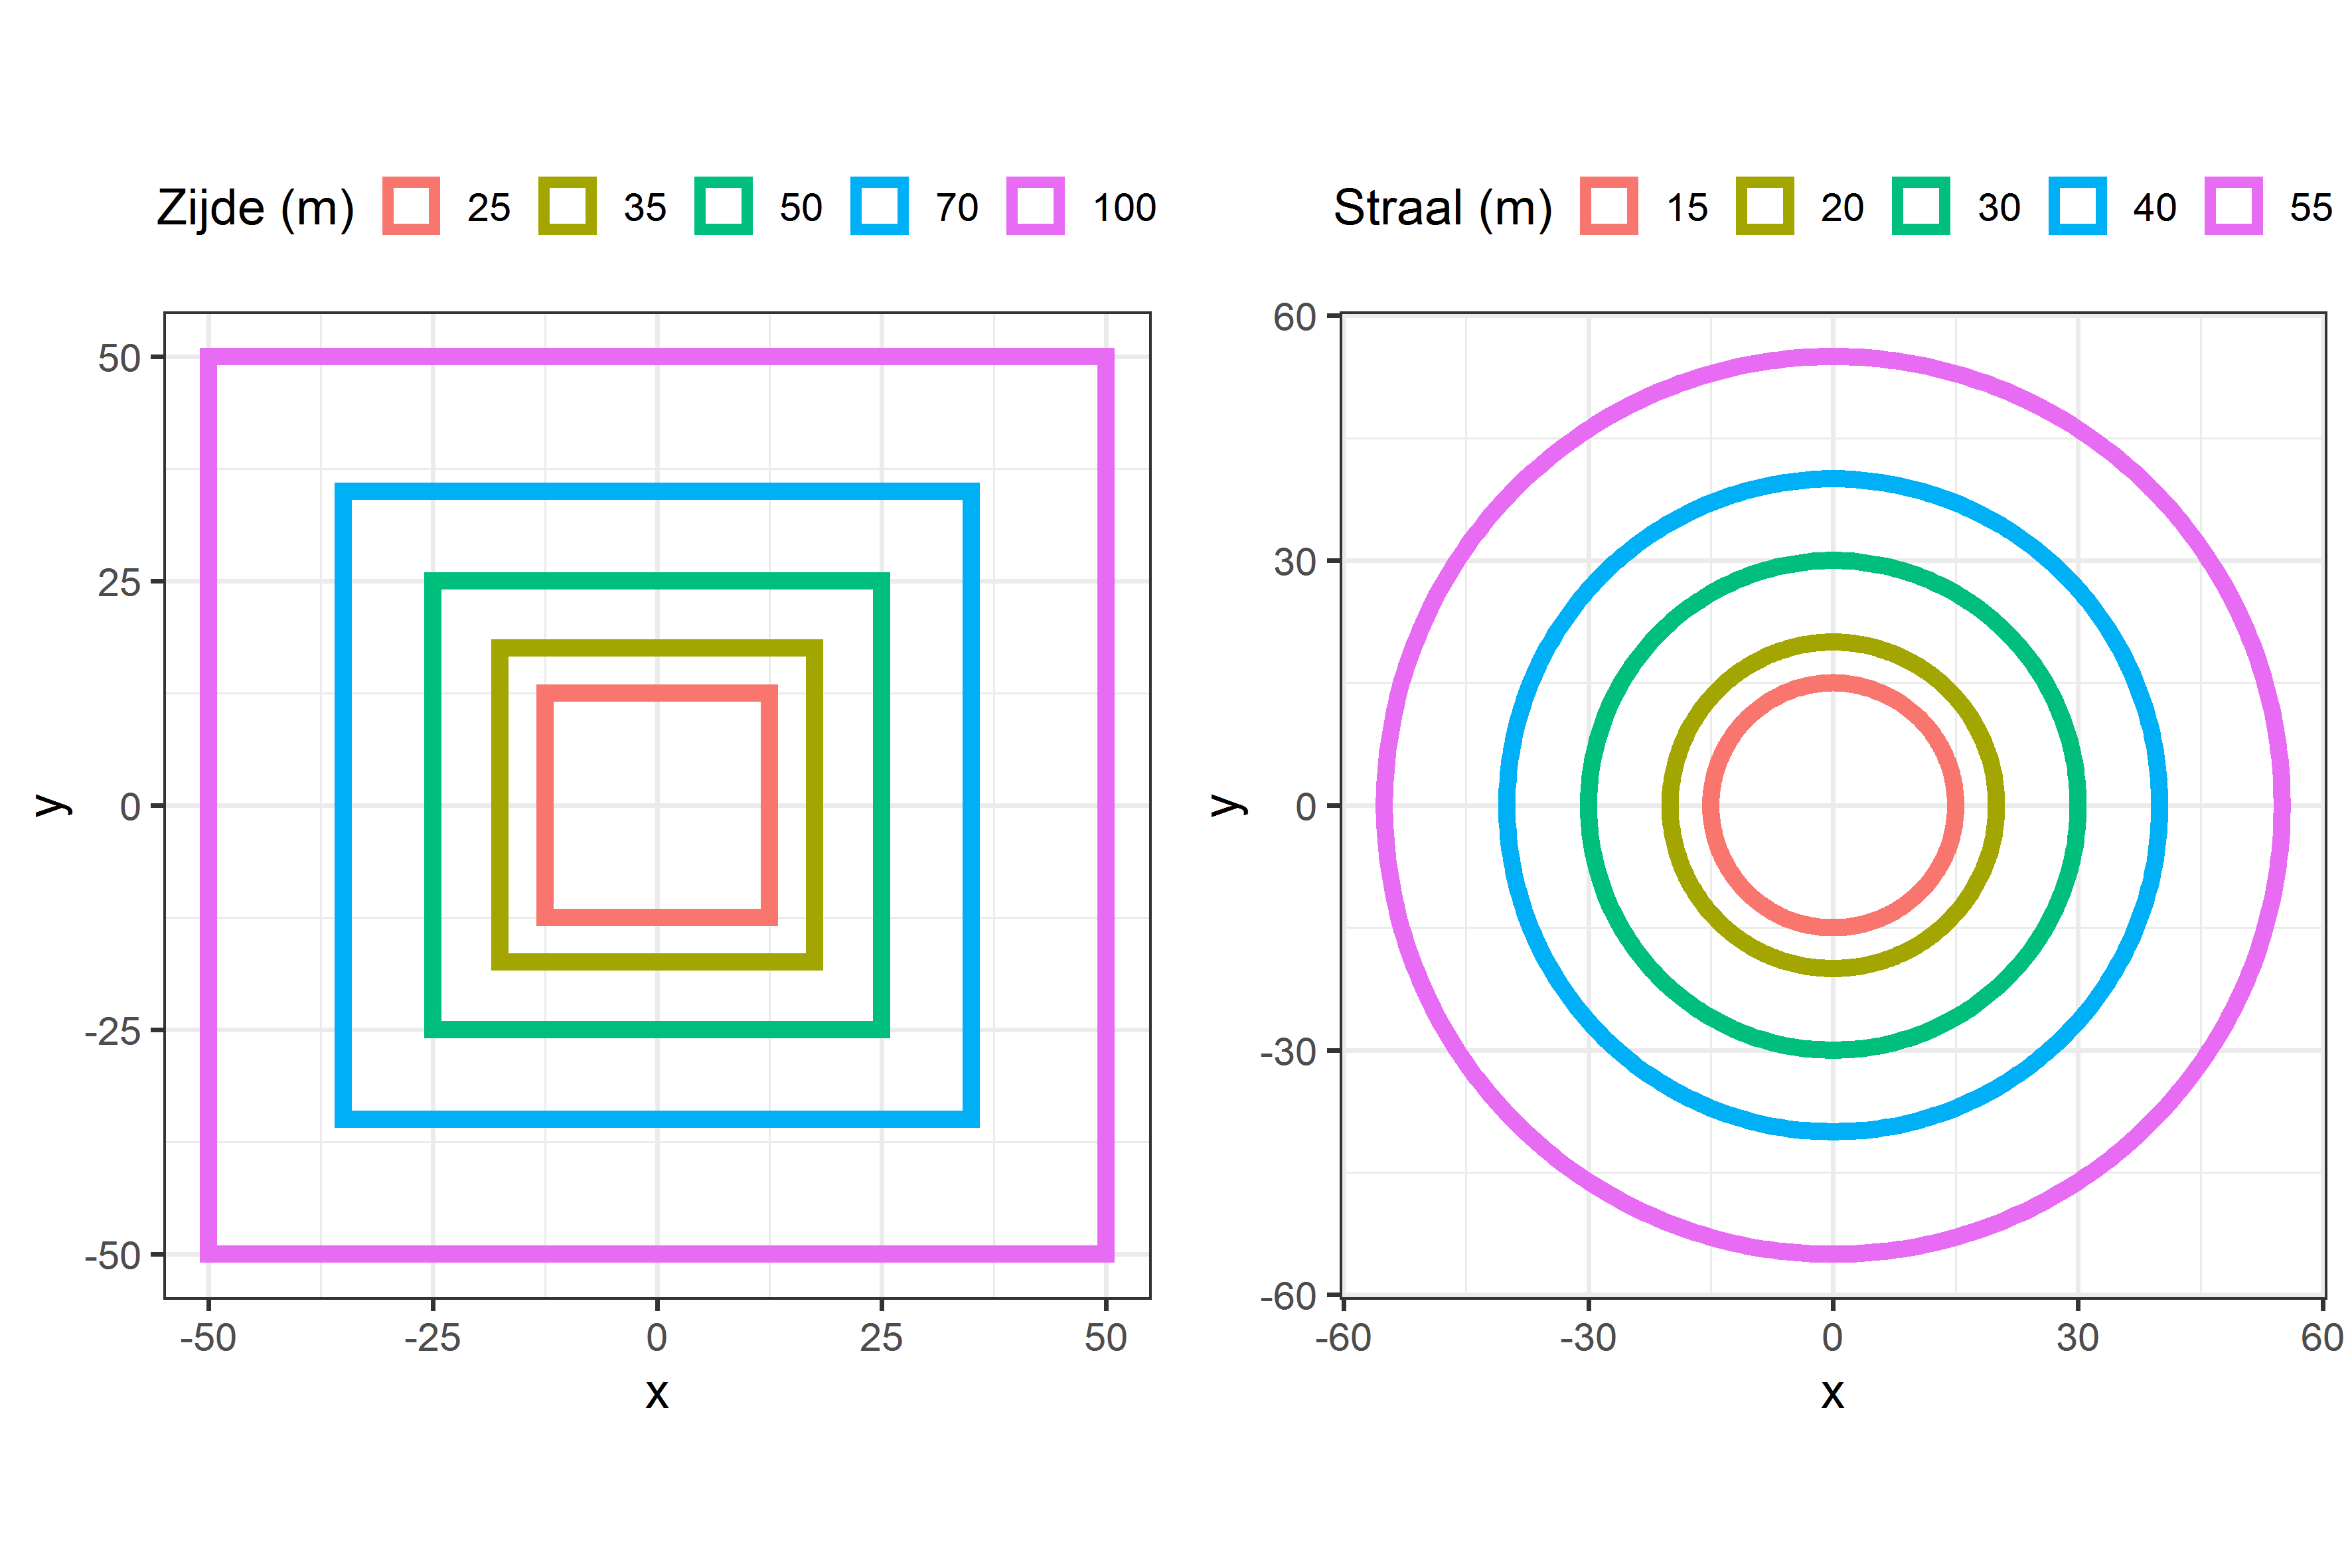 Voorstelling van de vijf mogelijke proefvlakoppervlaktes (1 ha, 1/2 ha, 1/4 ha, 1/8 ha of 1/16 ha) in geval van vierkante en cirkelvormige proefvlakken.